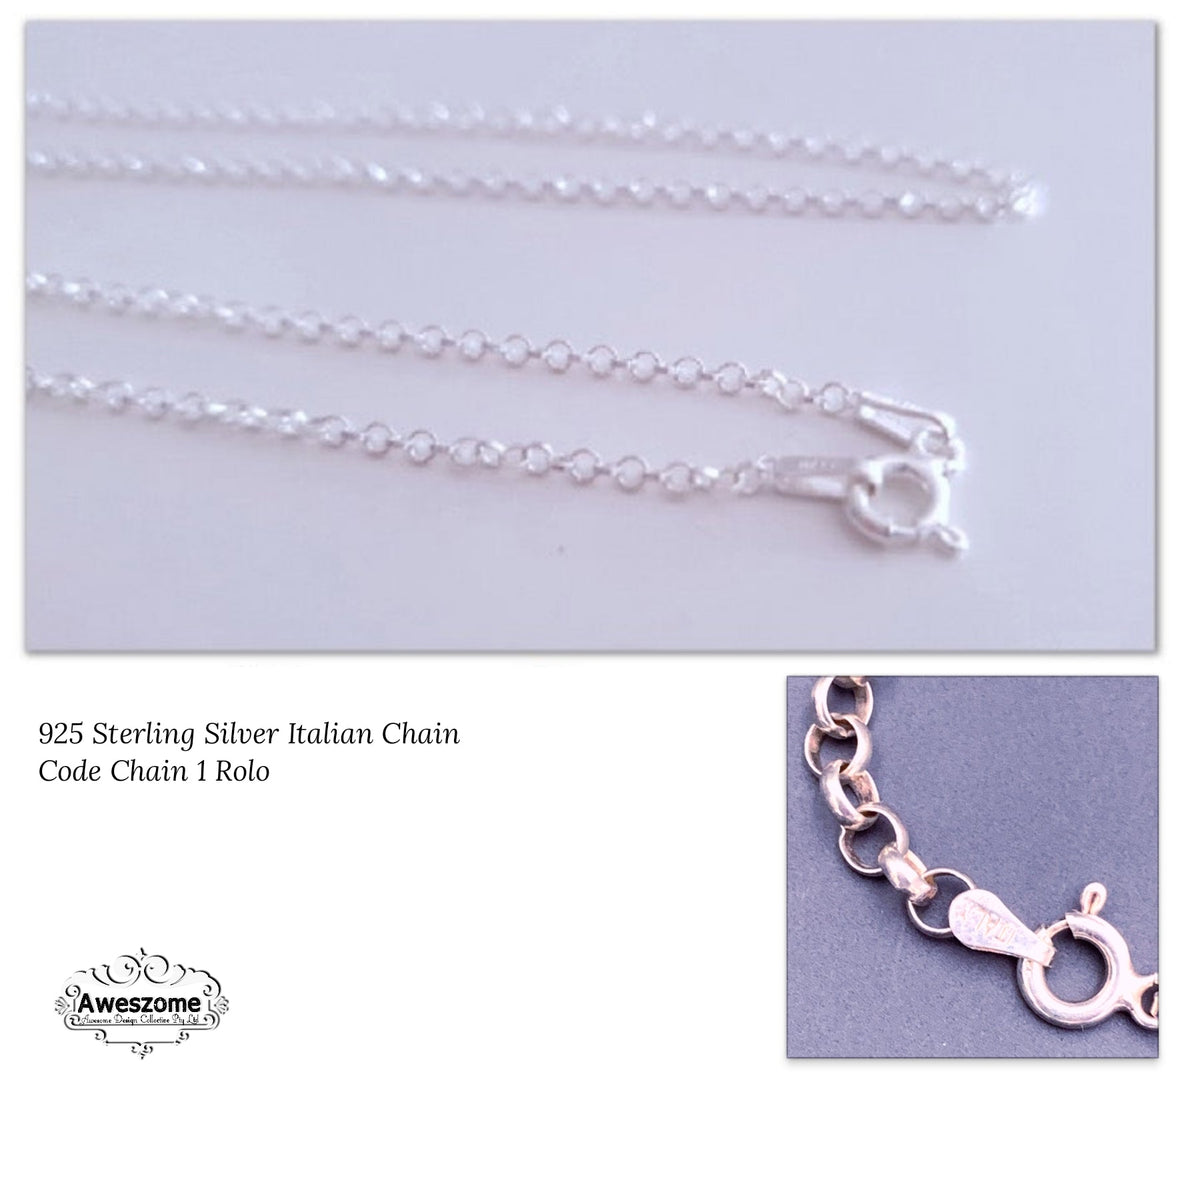 Silver Chain 1 Rolo 1.1mm